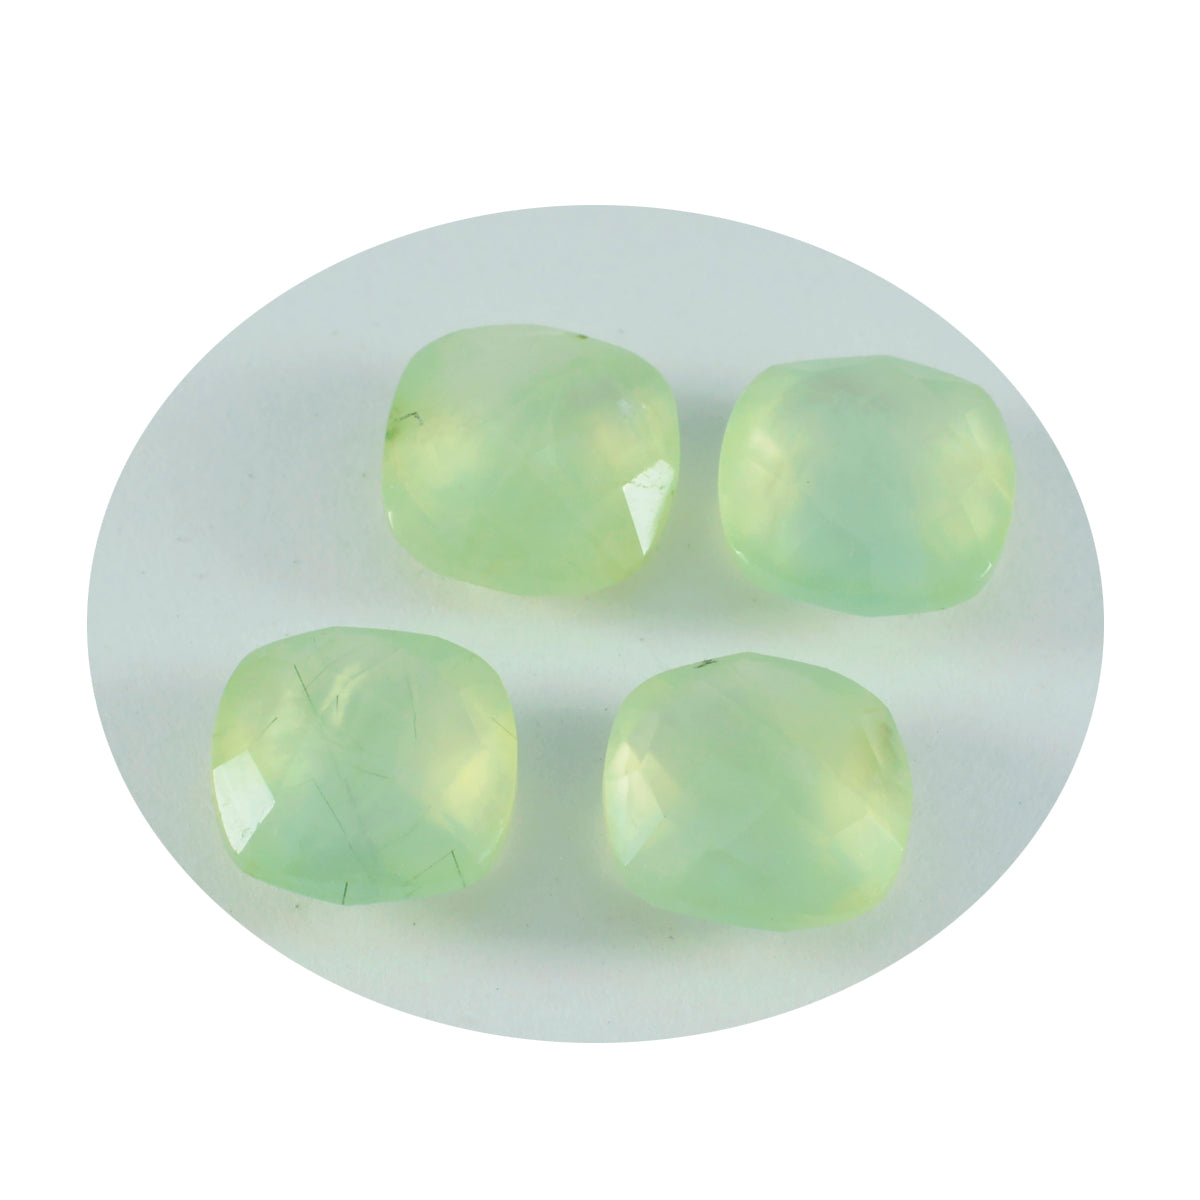 riyogems 1pc グリーン プレナイト ファセット 10x10 mm クッション形状の美しい品質のルース宝石